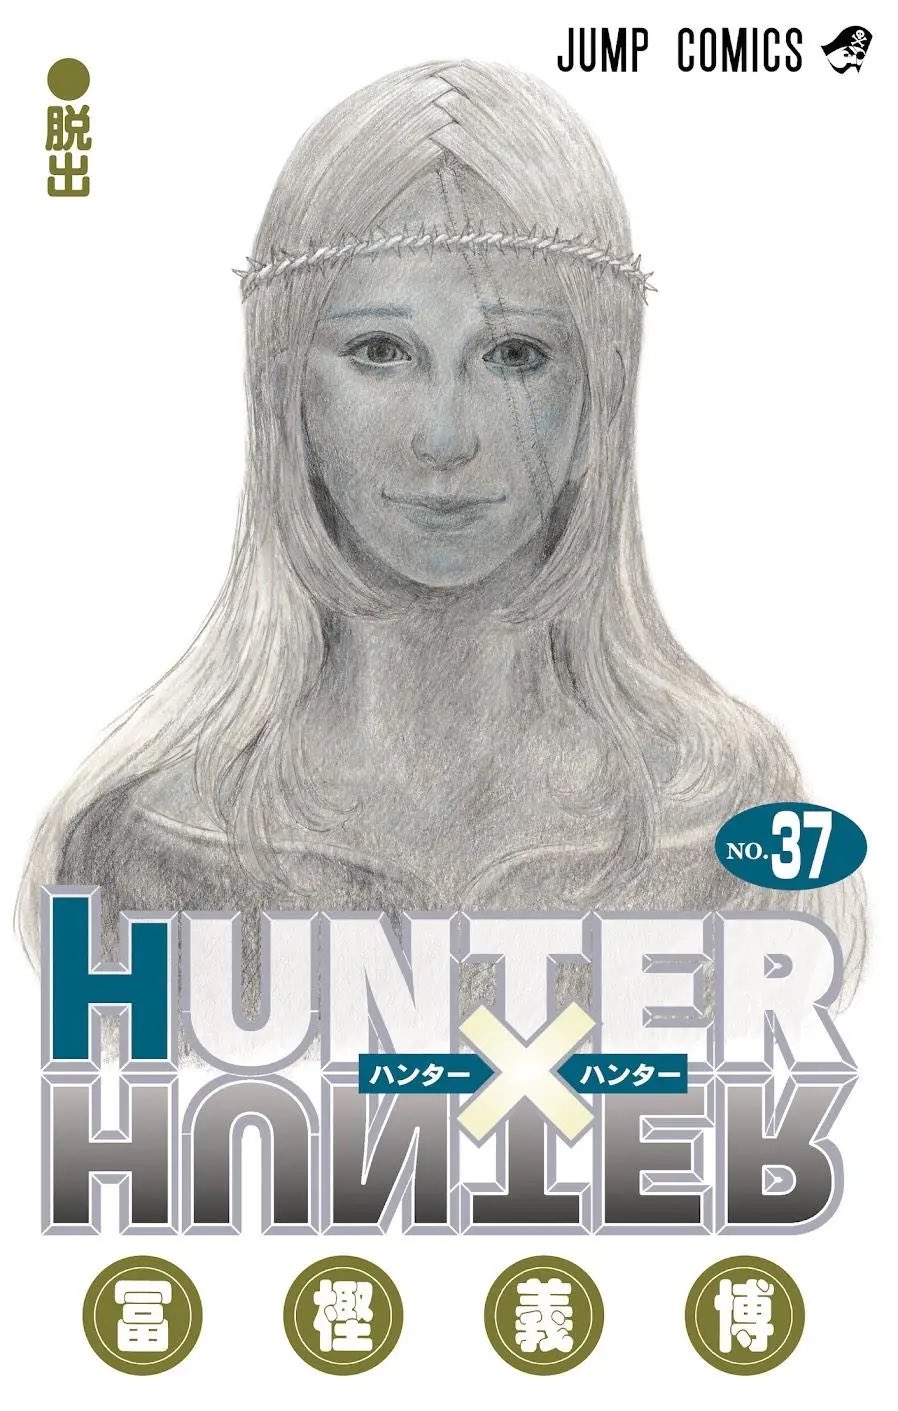 Depois de mais de um ano, Hunter x Hunter voltará a ser publicado